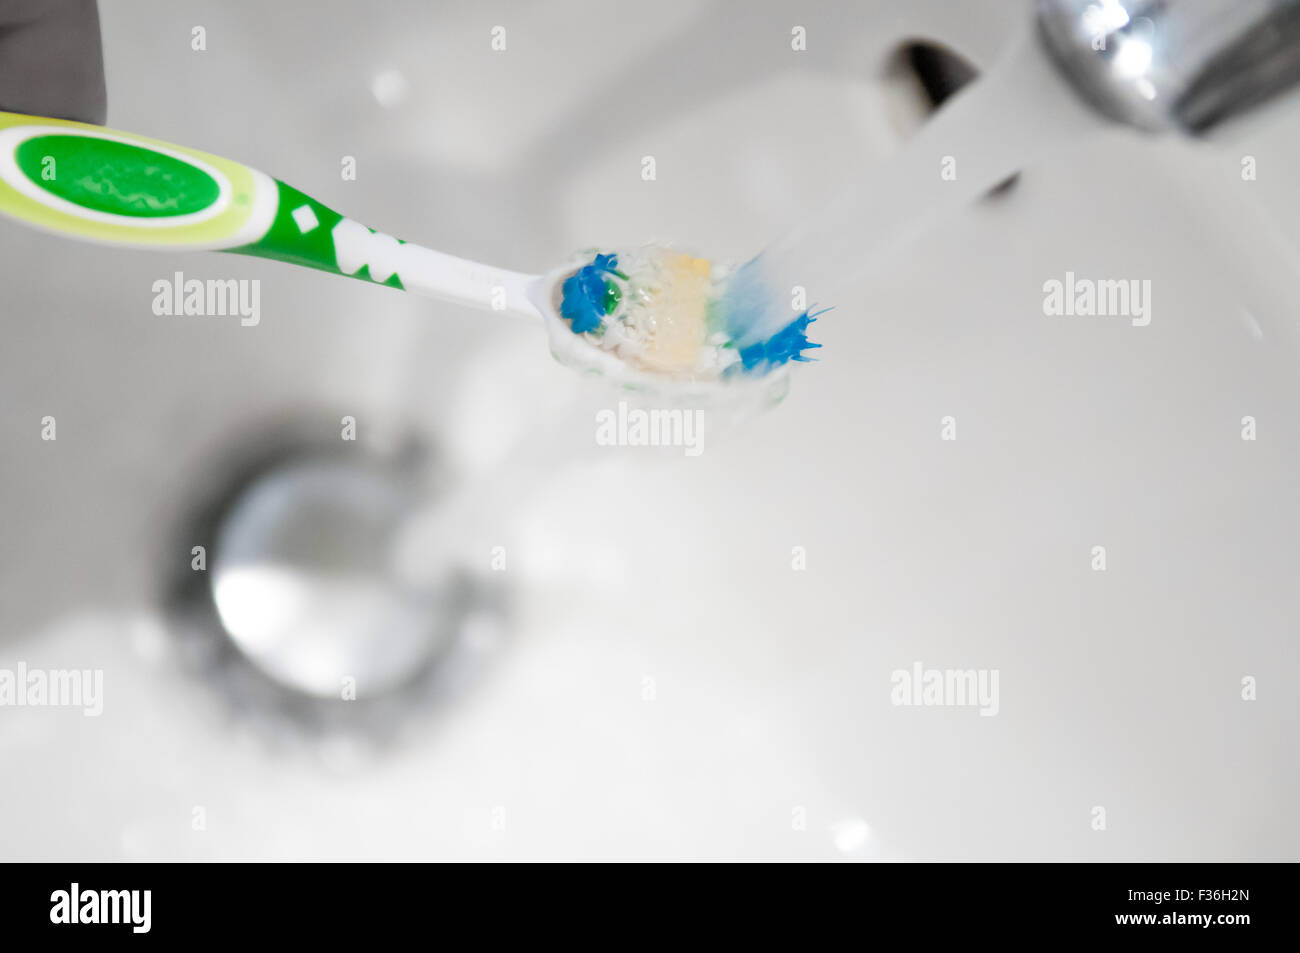 Cepillo de dientes se enjuaga bajo el grifo de agua de un grifo Foto de stock